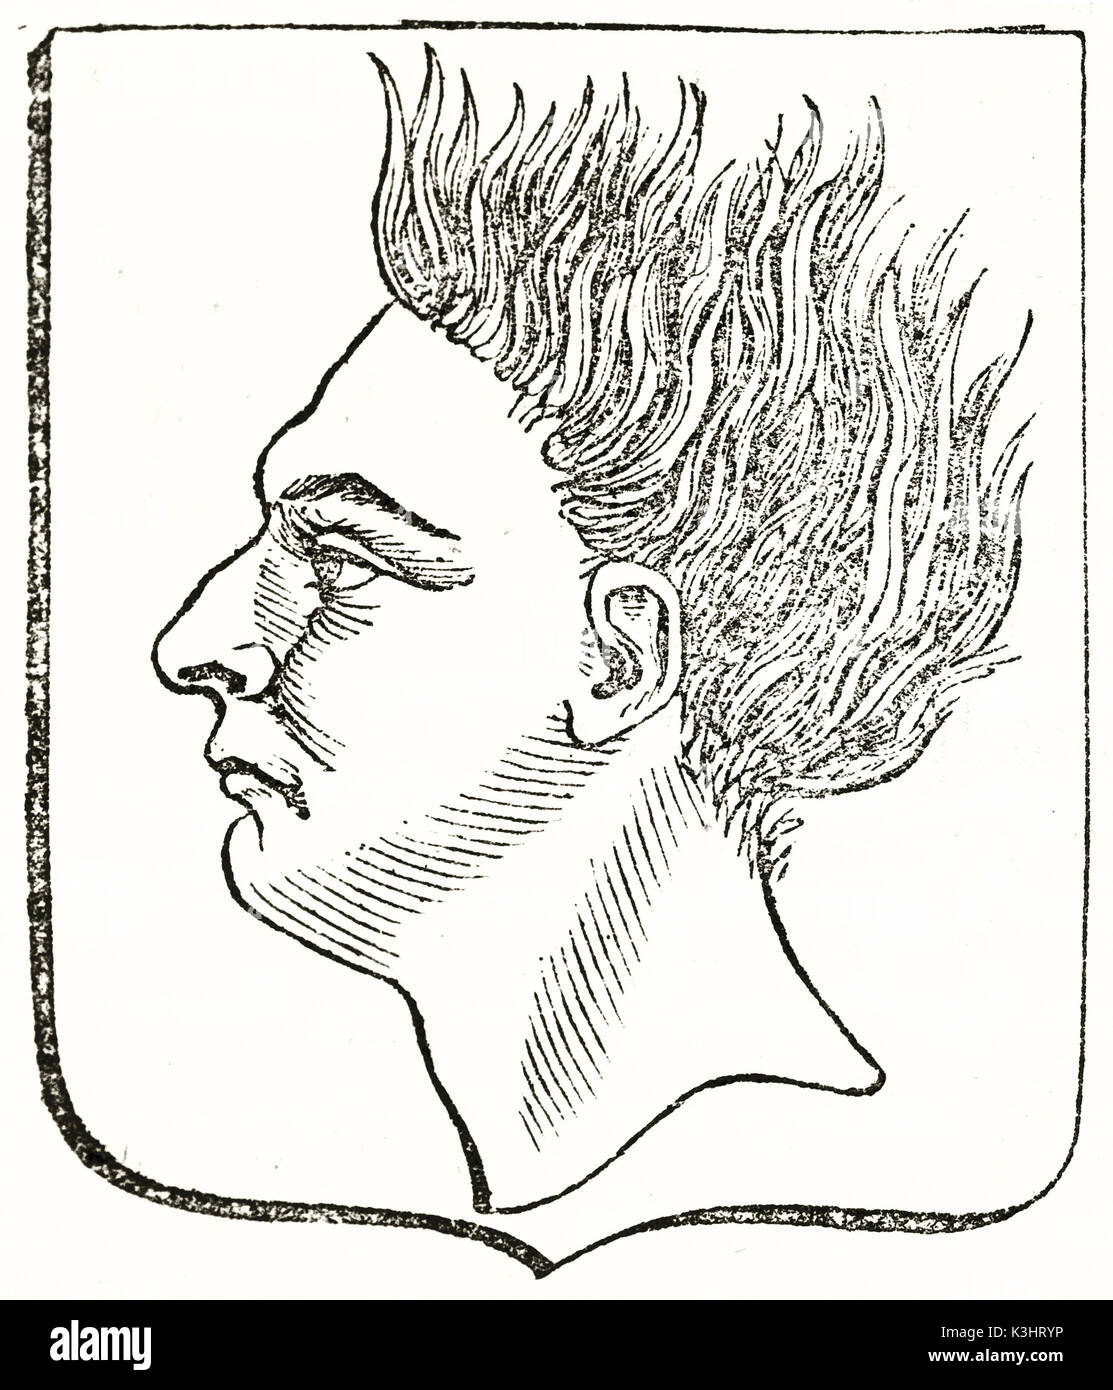 Alte graviert Reproduktion eines Wappen besteht aus Profil Leitung mit angehobenem Haar. Von unbekannter Autor, auf Magasin Pittoresque, Paris, 1838 veröffentlicht. Stockfoto